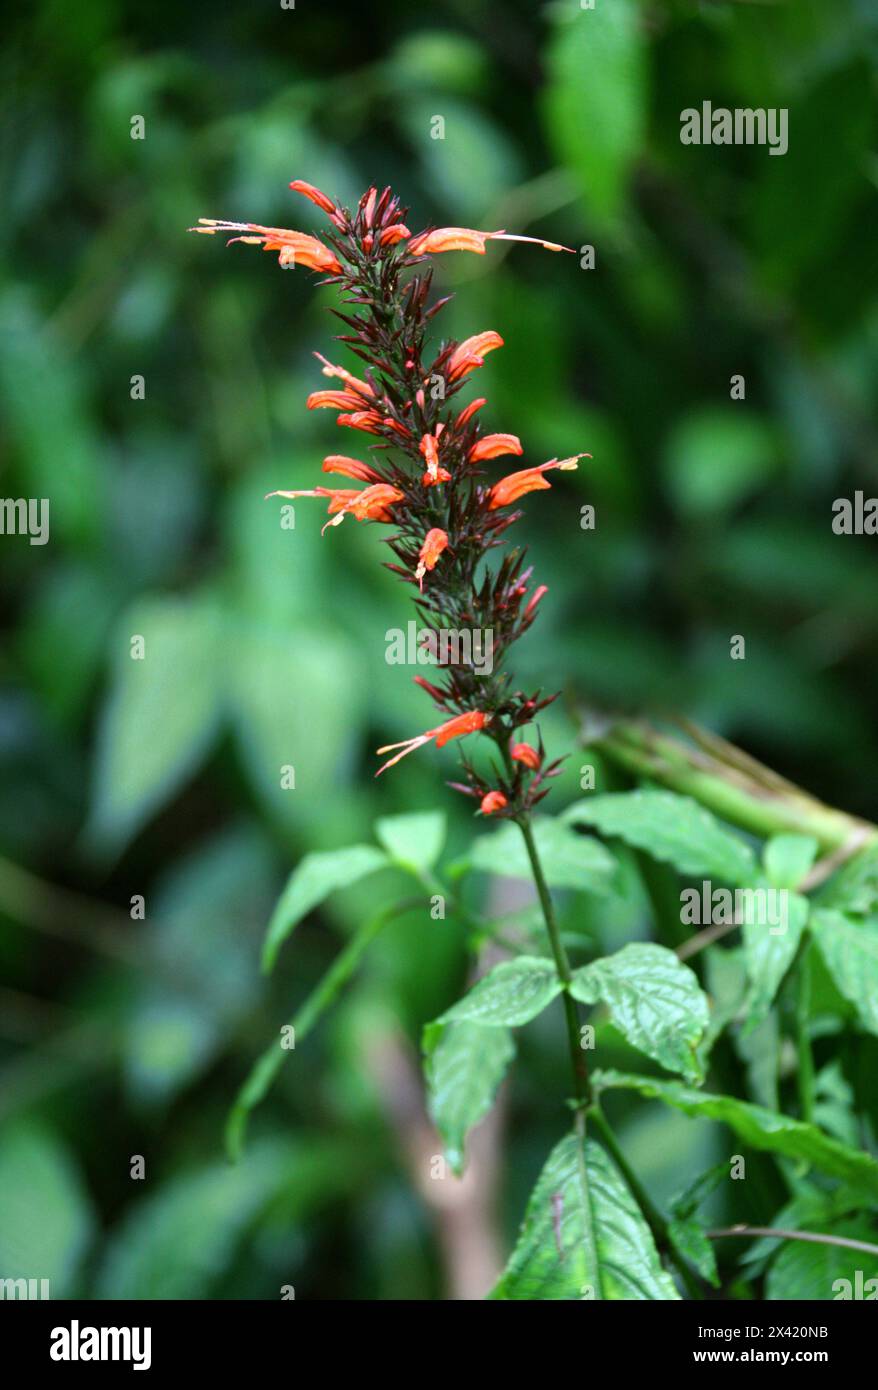 Pavón de Montaña, Stenostephanus blepharorhachis, Justicieae, Acanthaceae. Fleur d'orange dans la forêt nuageuse de Monteverde, Costa Rica, Amérique centrale. Banque D'Images